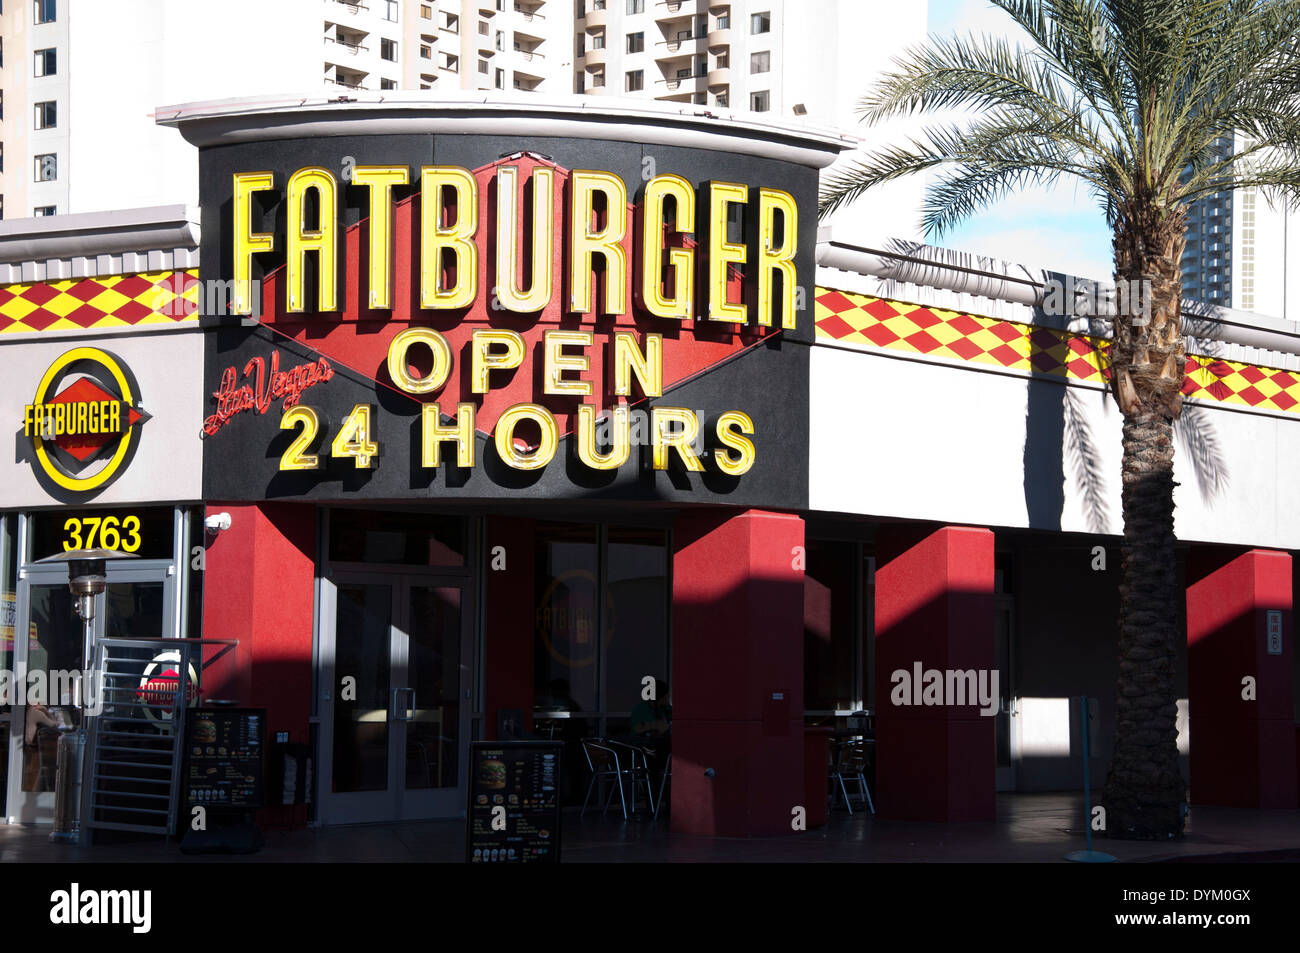 Fatburger ouvert 24 heures Las Vegas, Nevada Banque D'Images